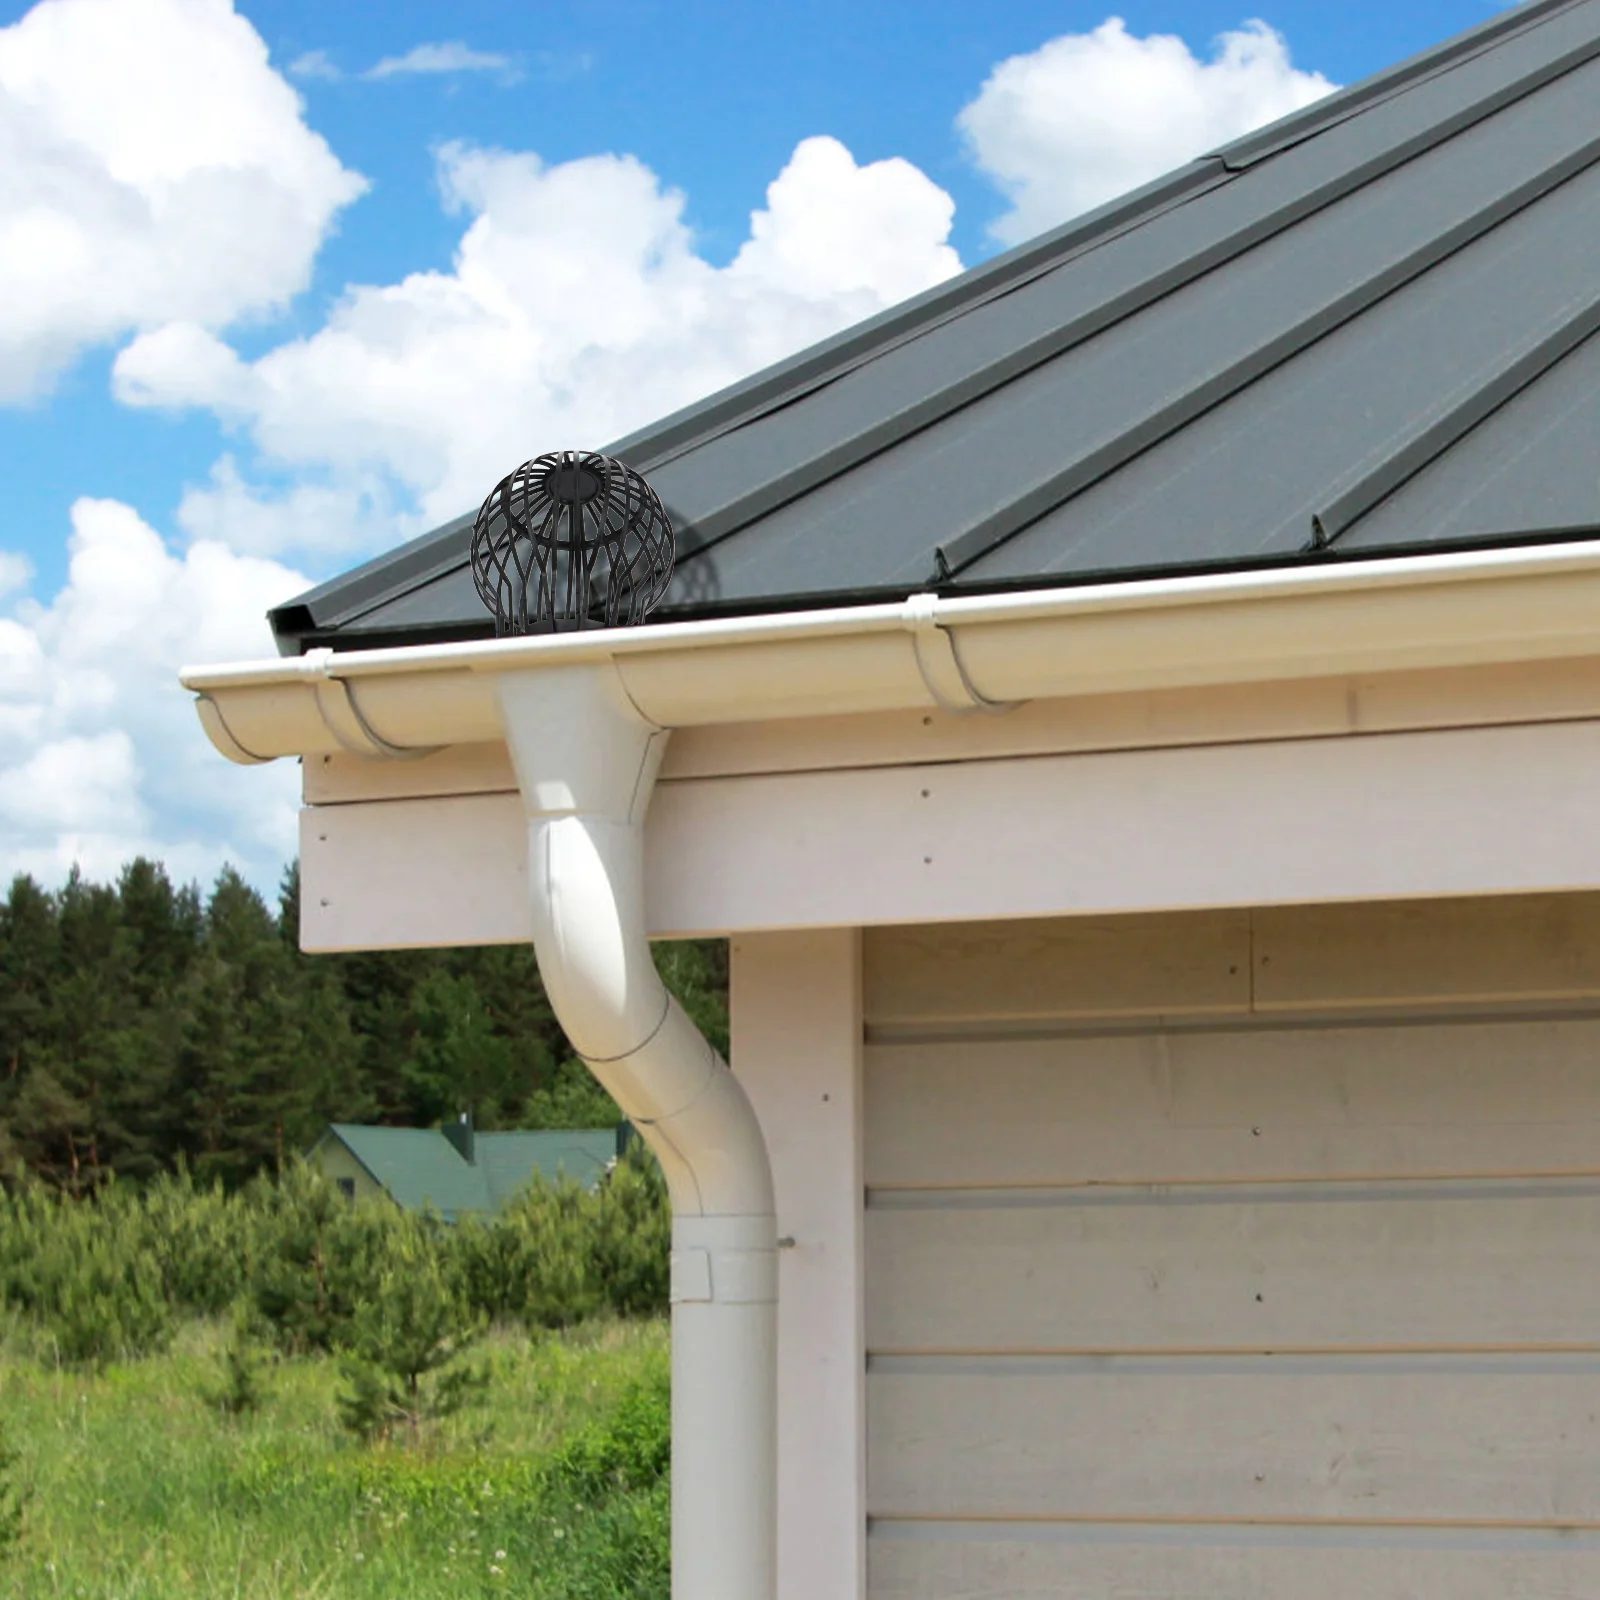 4 Stück Dach blech Netz Dachrinnen schutz Fallrohre Filters ieb verhindert,  dass Blatts chutt Äste Dachmoos die Rohre verstopfen - AliExpress